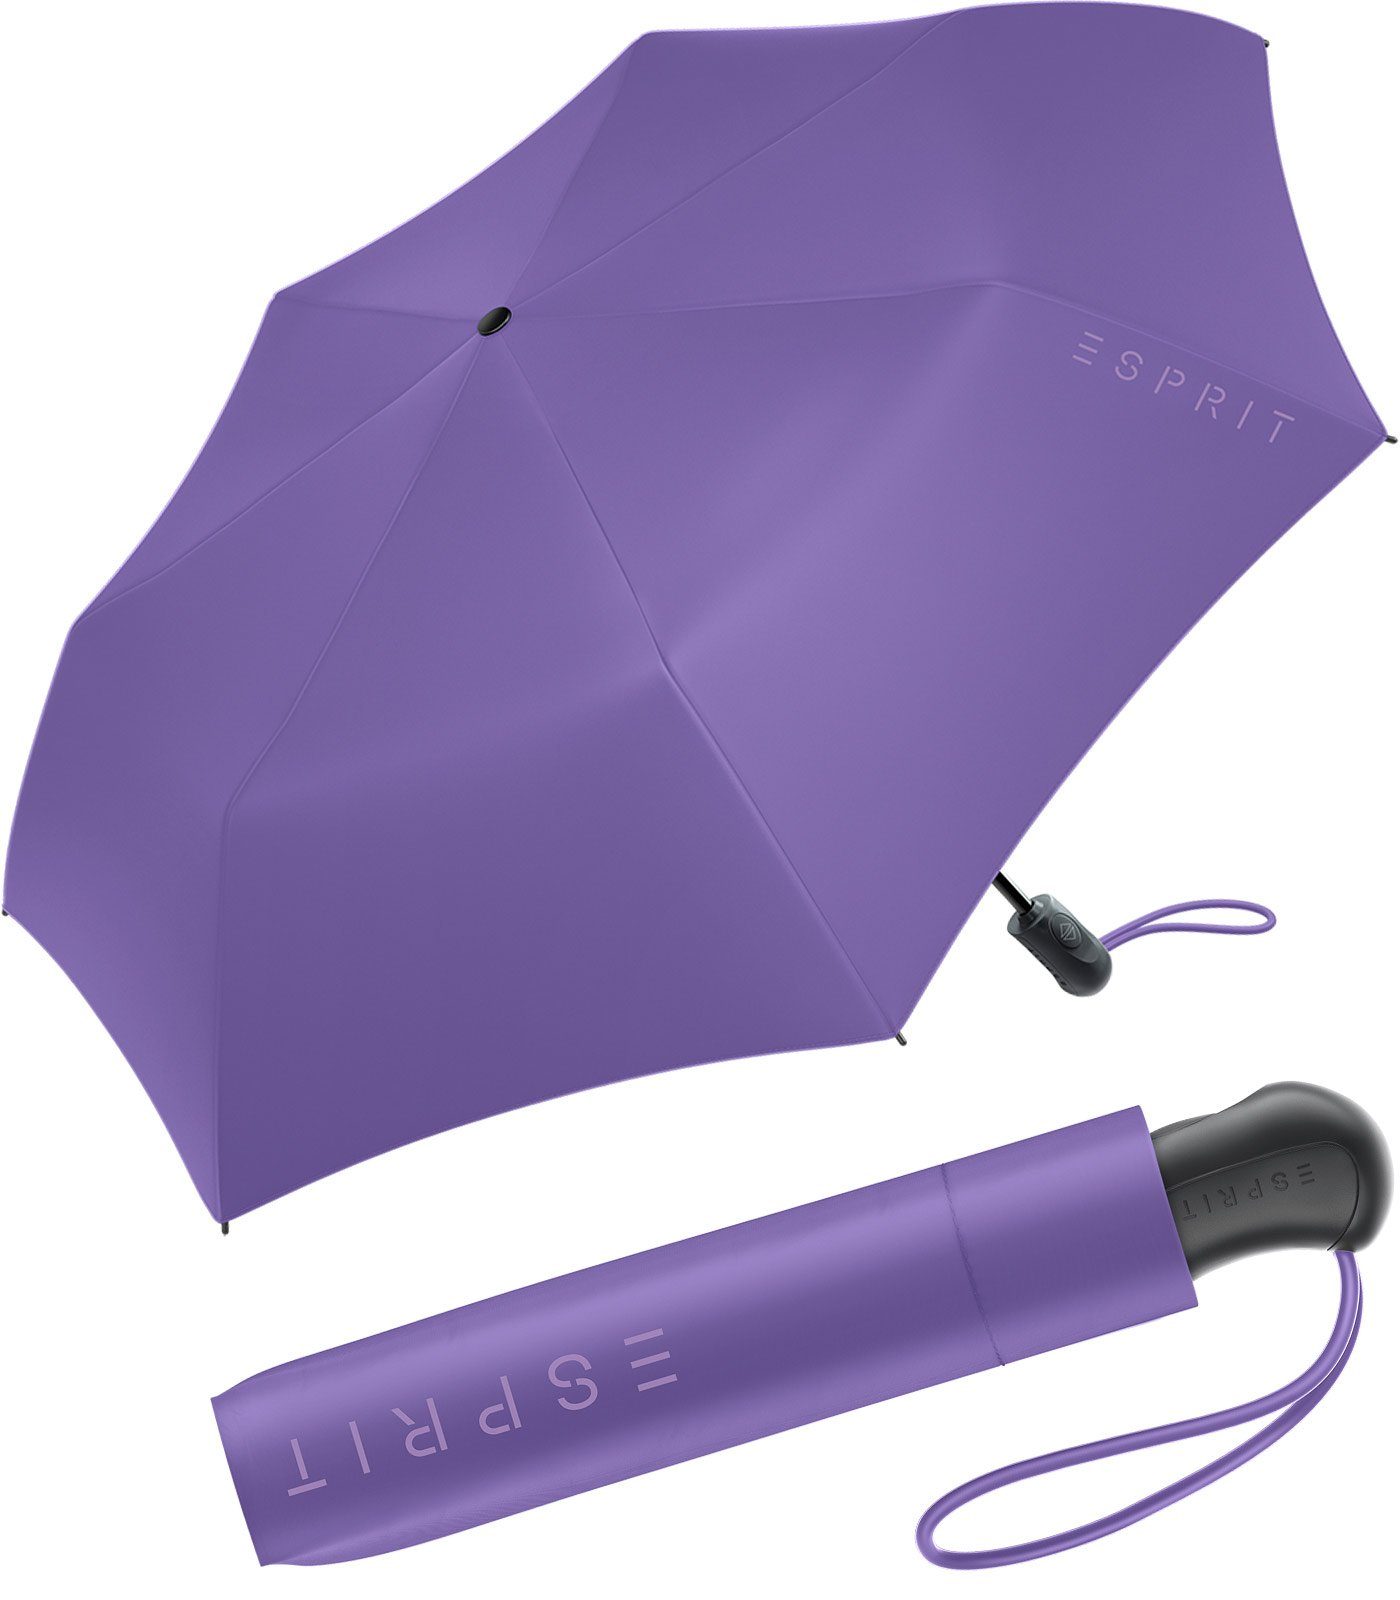 Esprit Langregenschirm Damen Easymatic Light Auf-Zu Automatik HW 2023, in den neuen Trendfarben, deep lavender lila